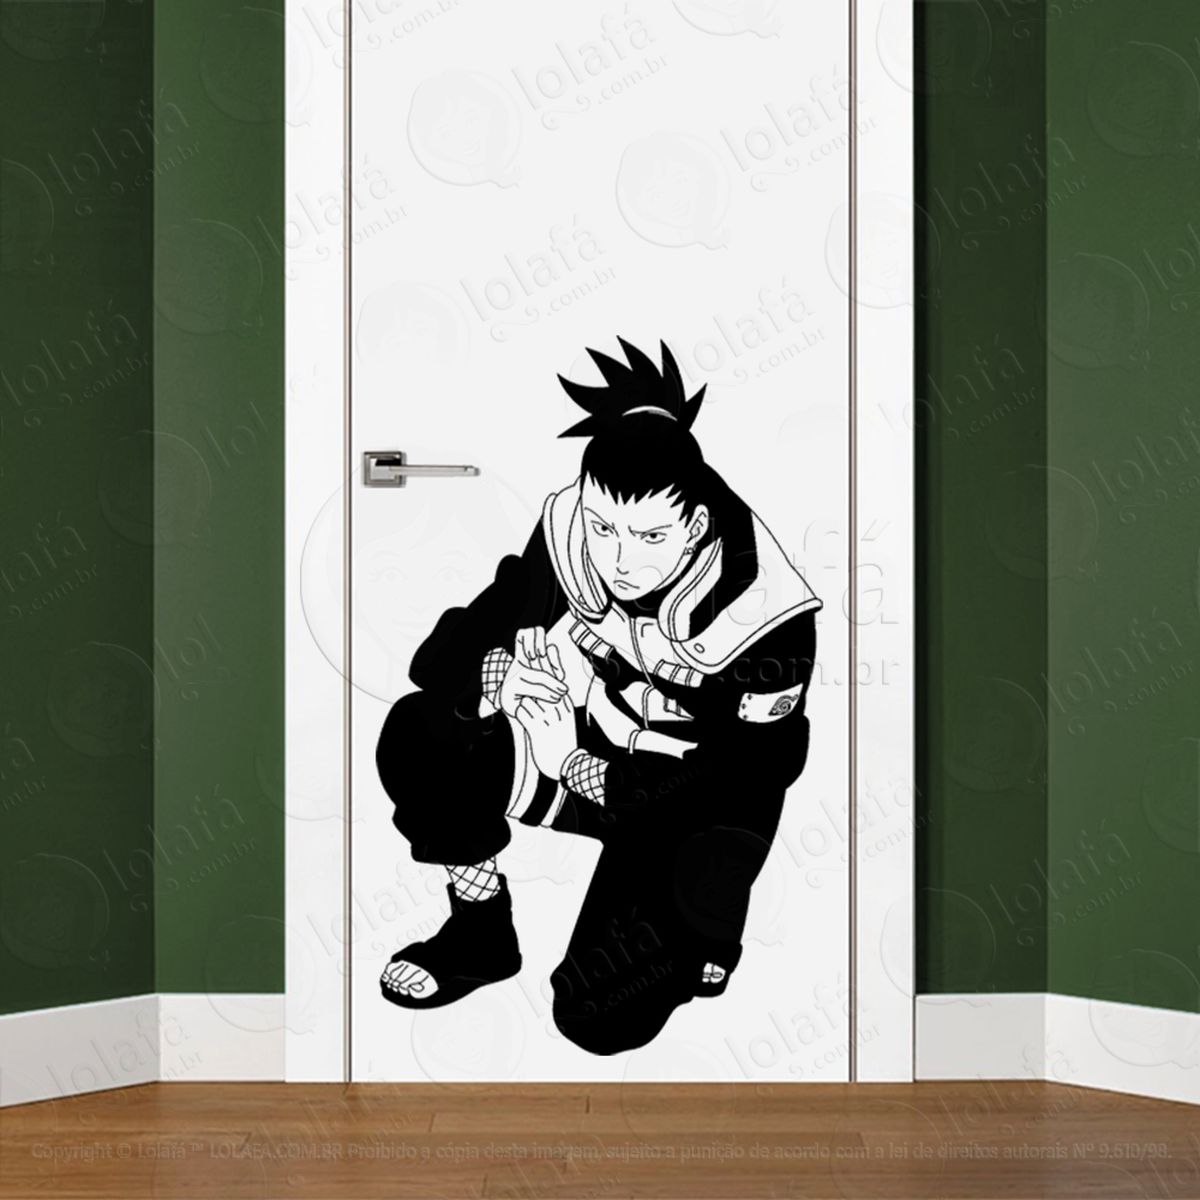 shikamaru adesivo de parede para quarto, porta e vidro - mod:205